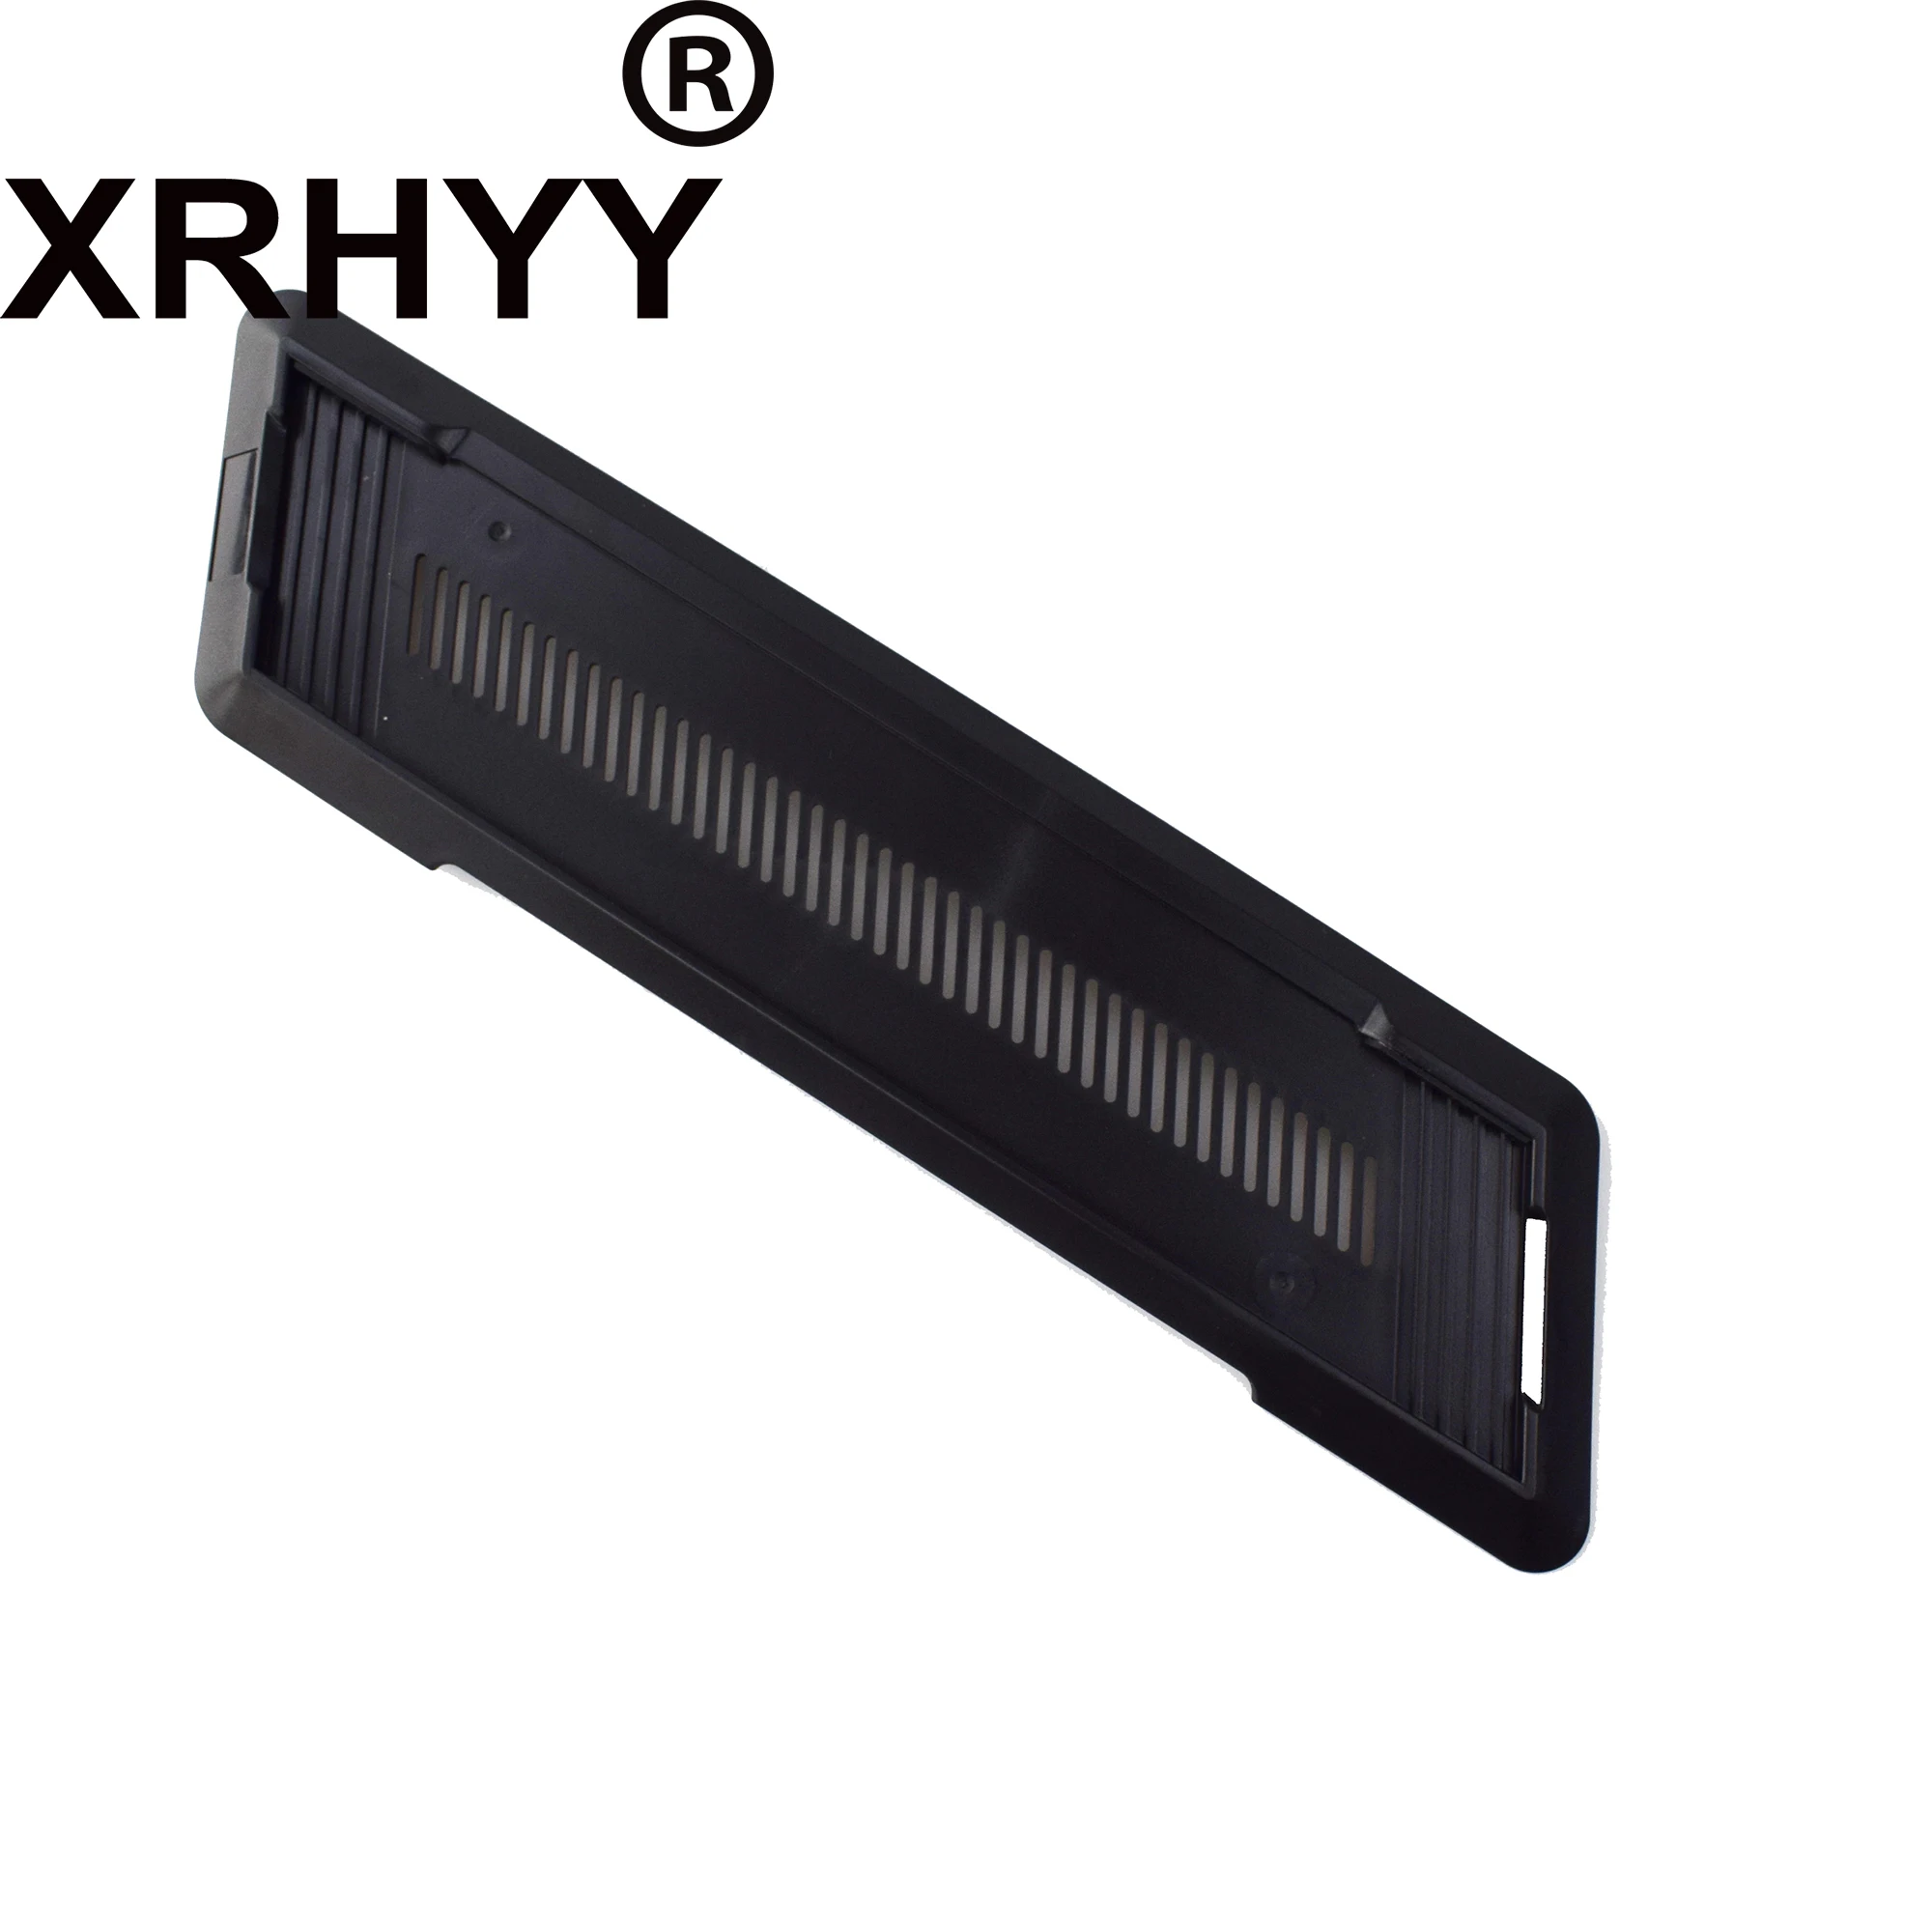 XRHYY Verticale Stand Voor Playstation PS4 Console Stand Zwart, Niet Voor PS4 Slim/Pro